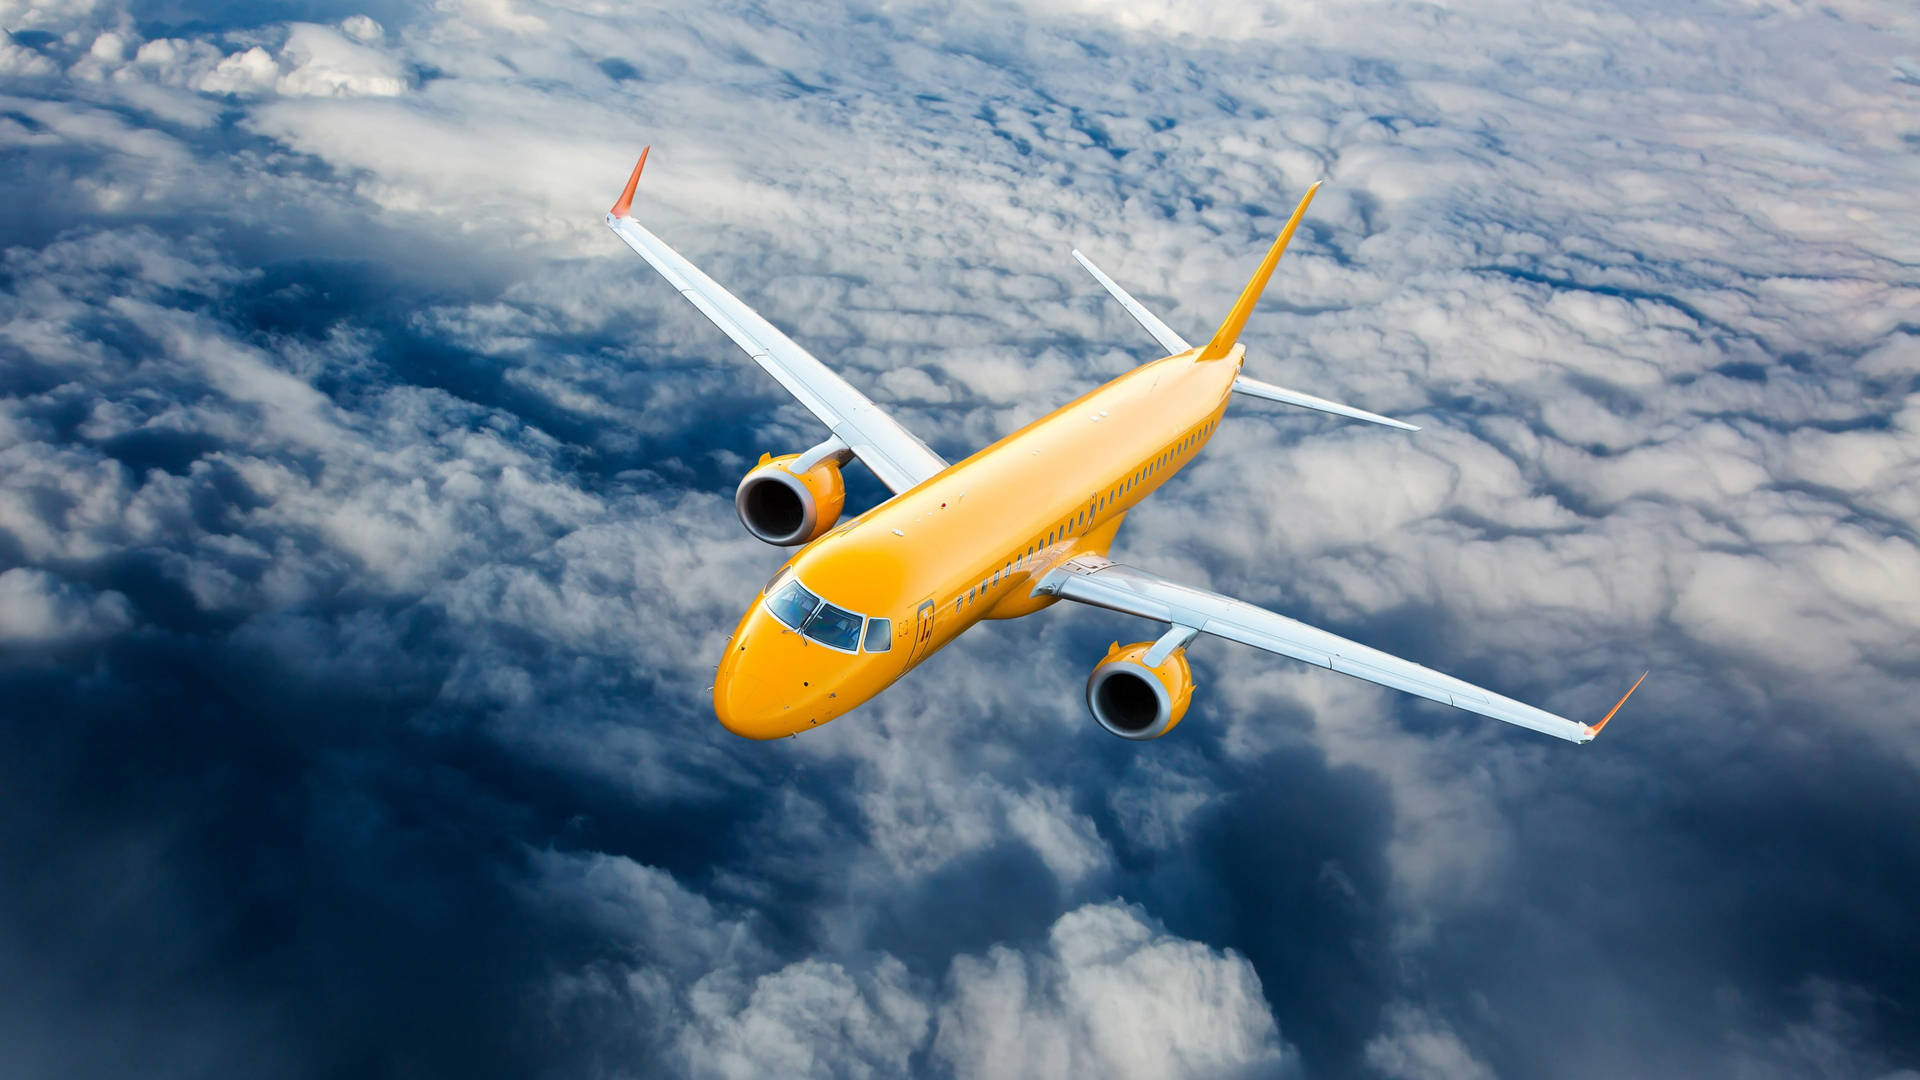 Flying Yellow Hd Plane